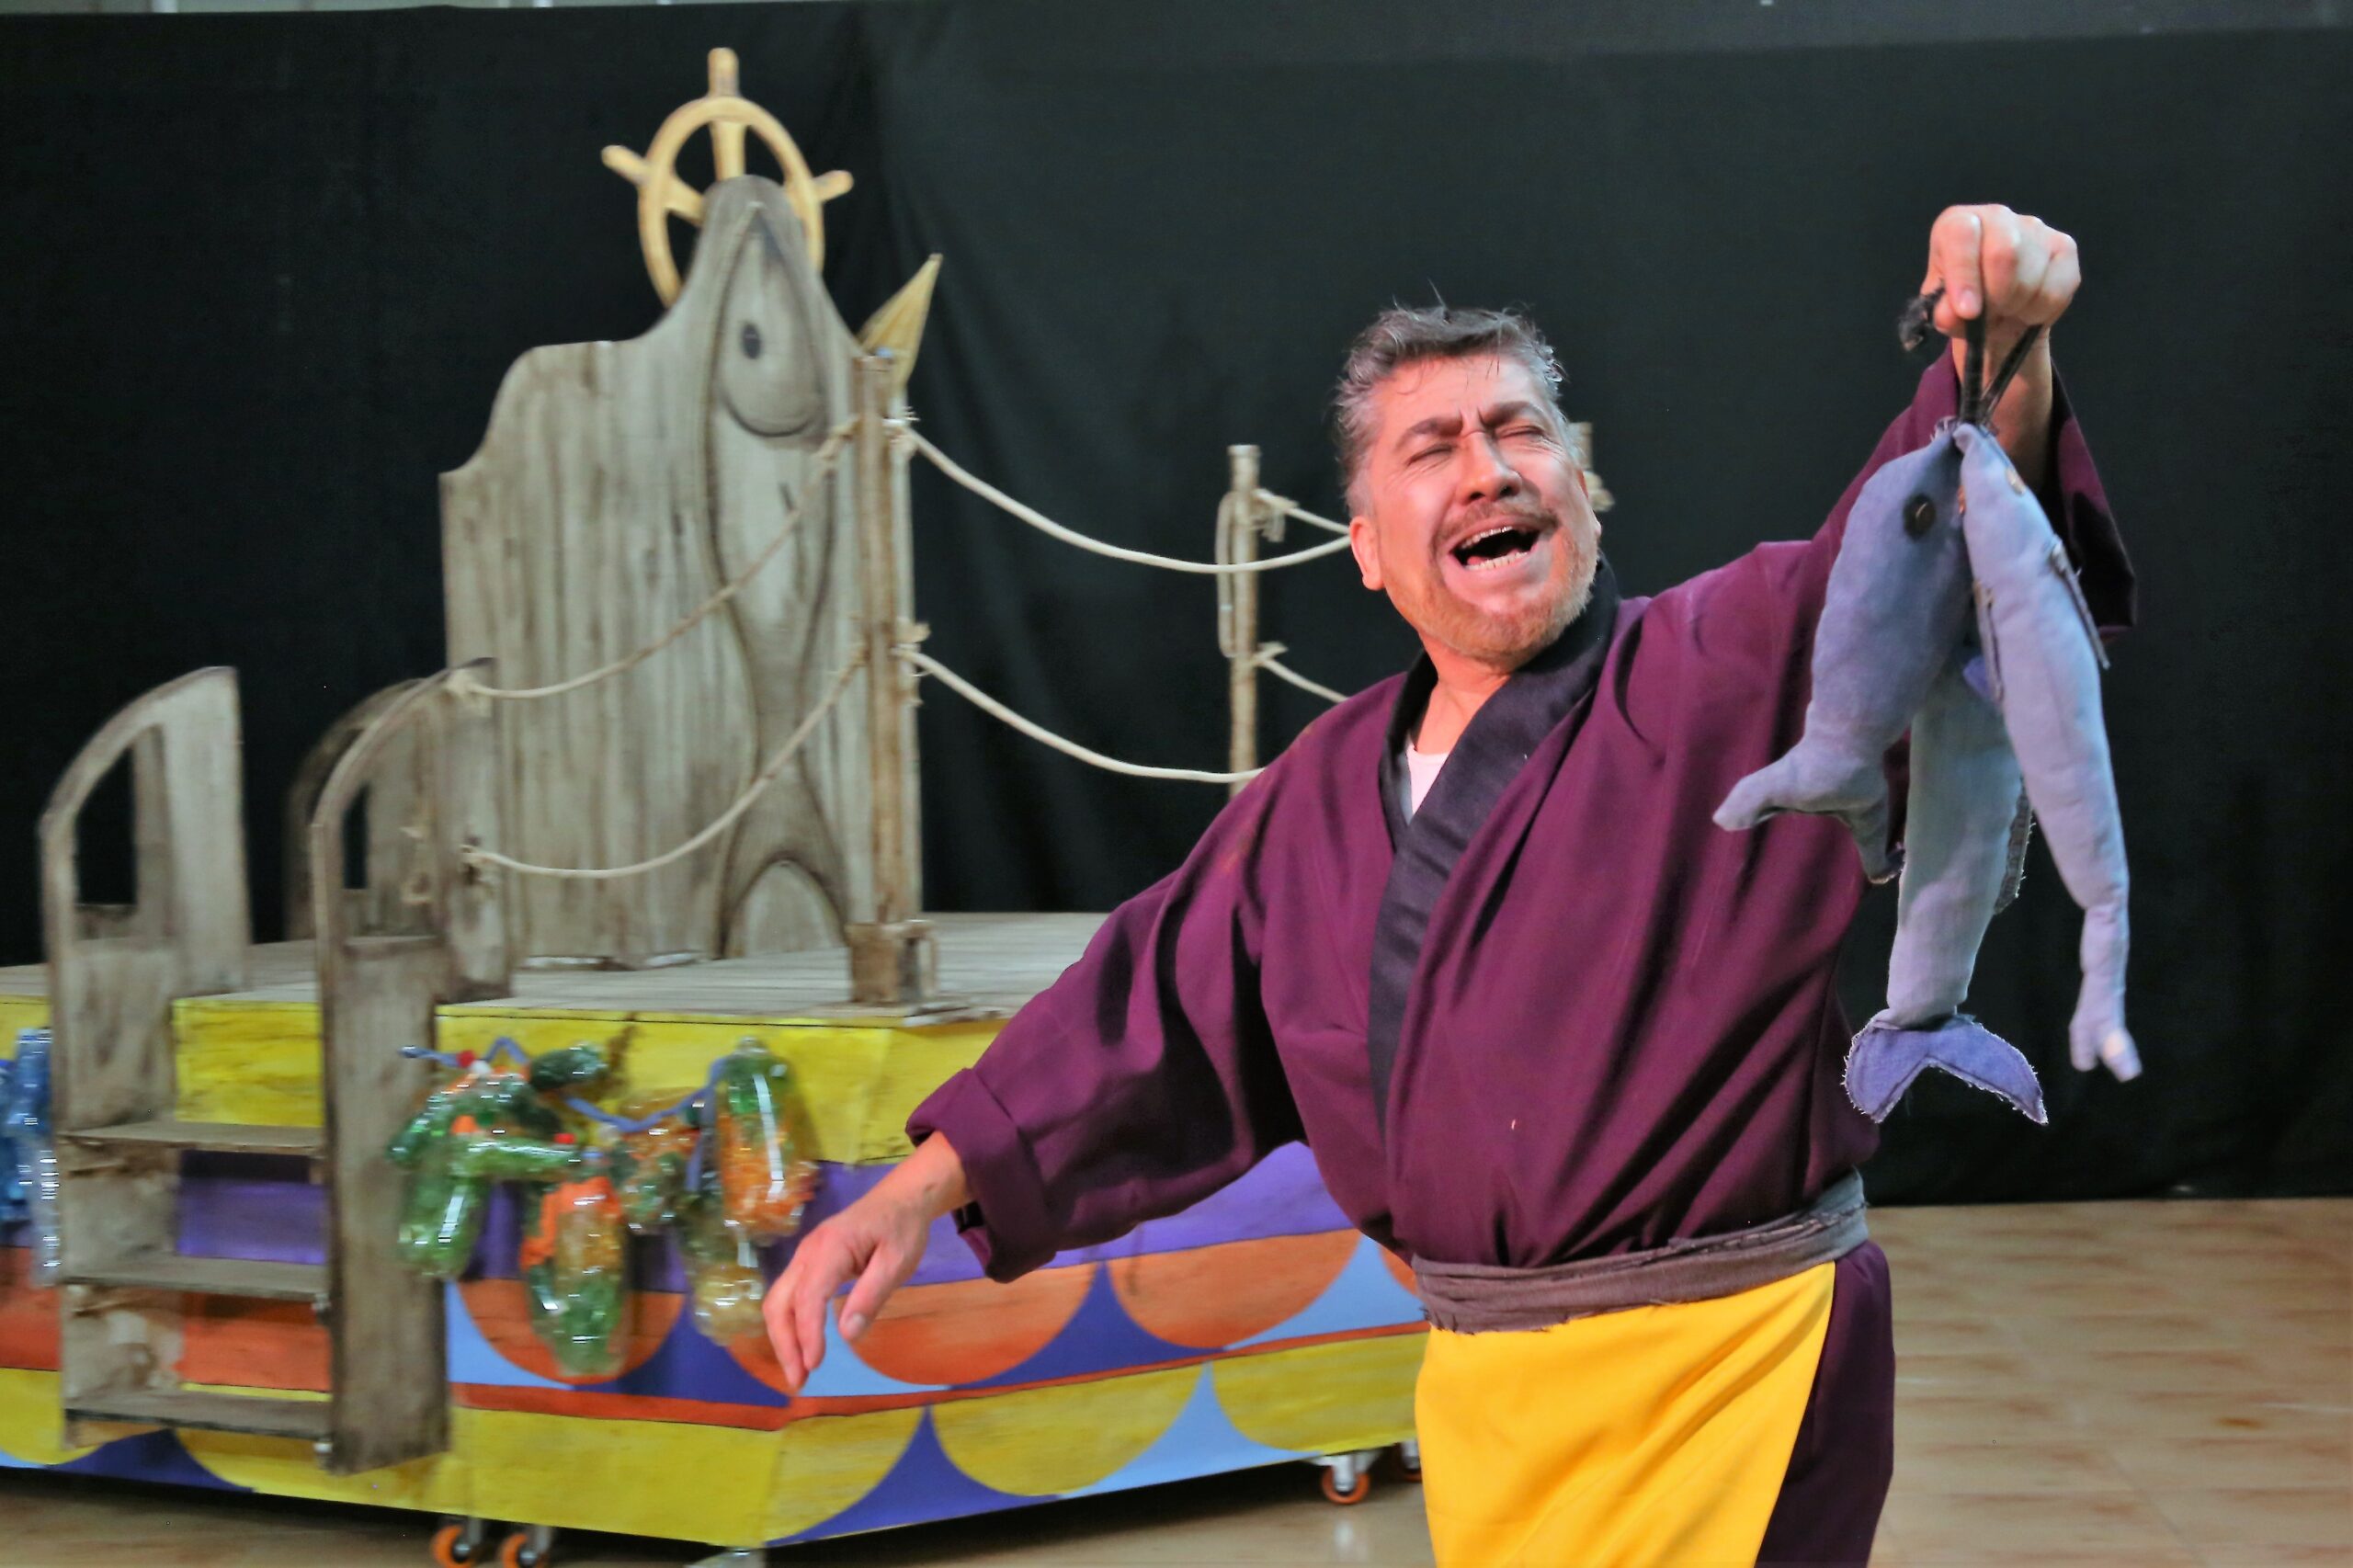 Compañía de Teatro de la UA inicia nueva temporada con una entretenida obra familiar